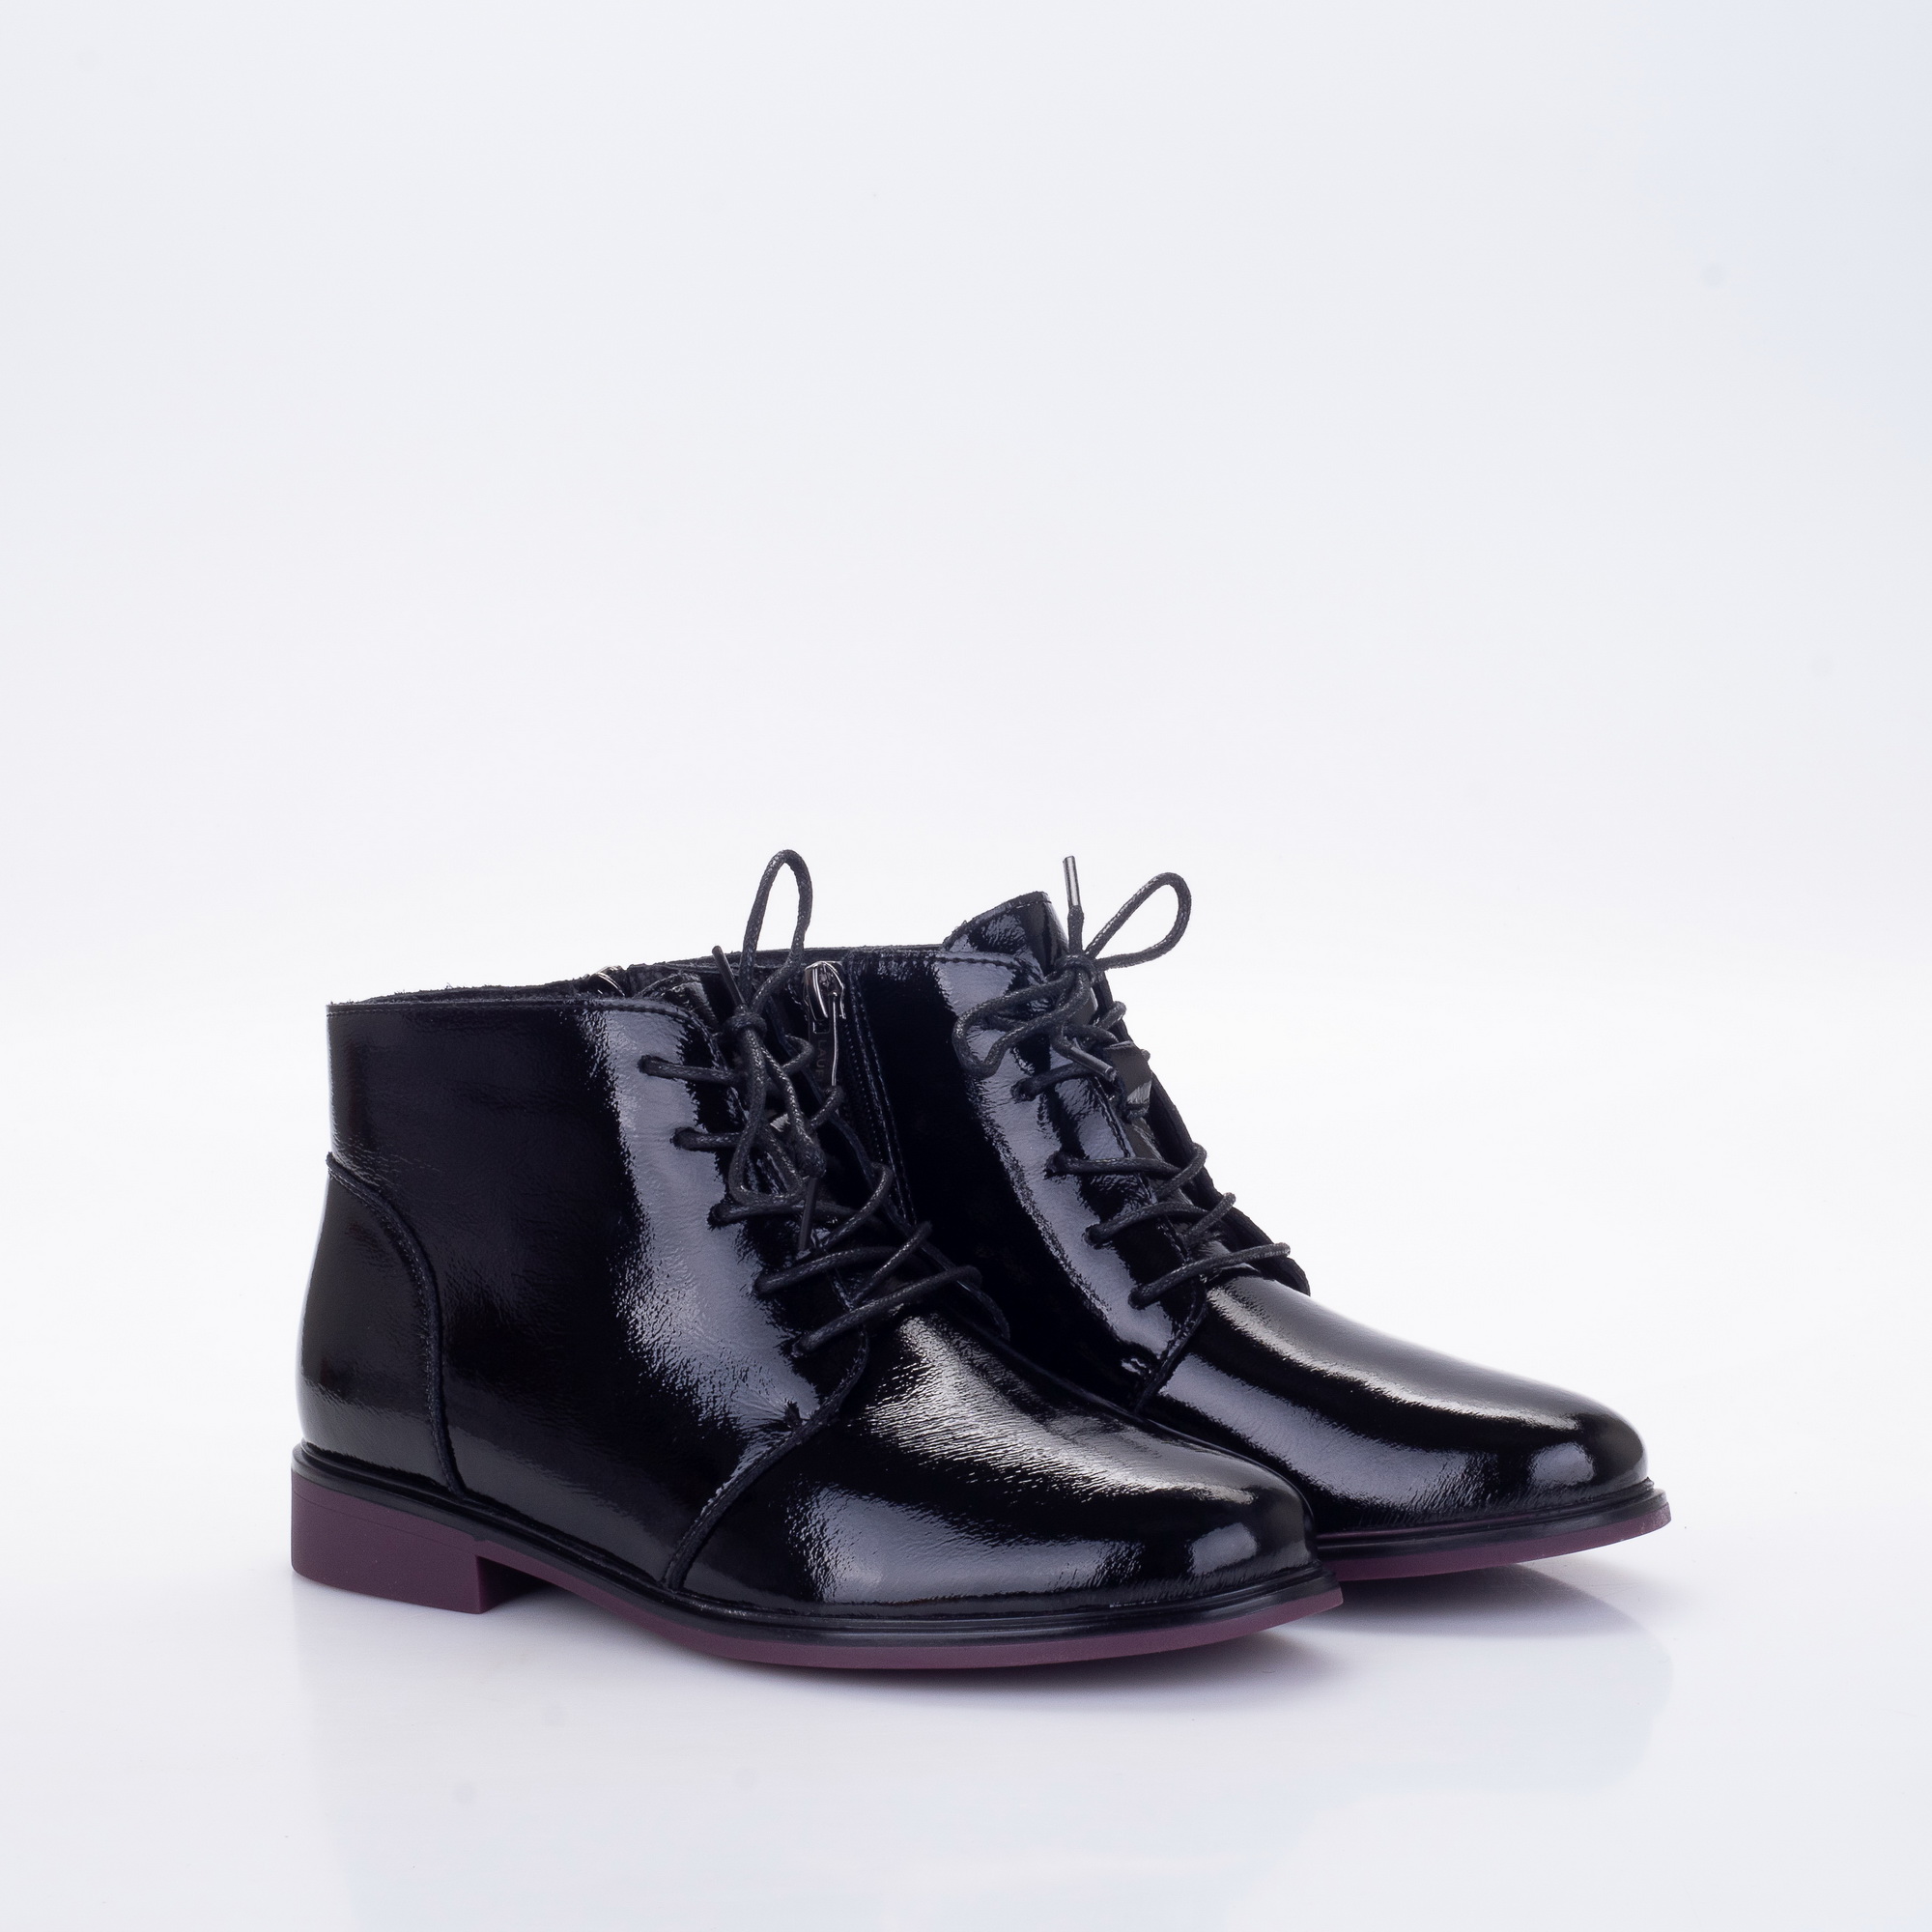 Фото Ботинки женские LA8 black купить на lauf.shoes